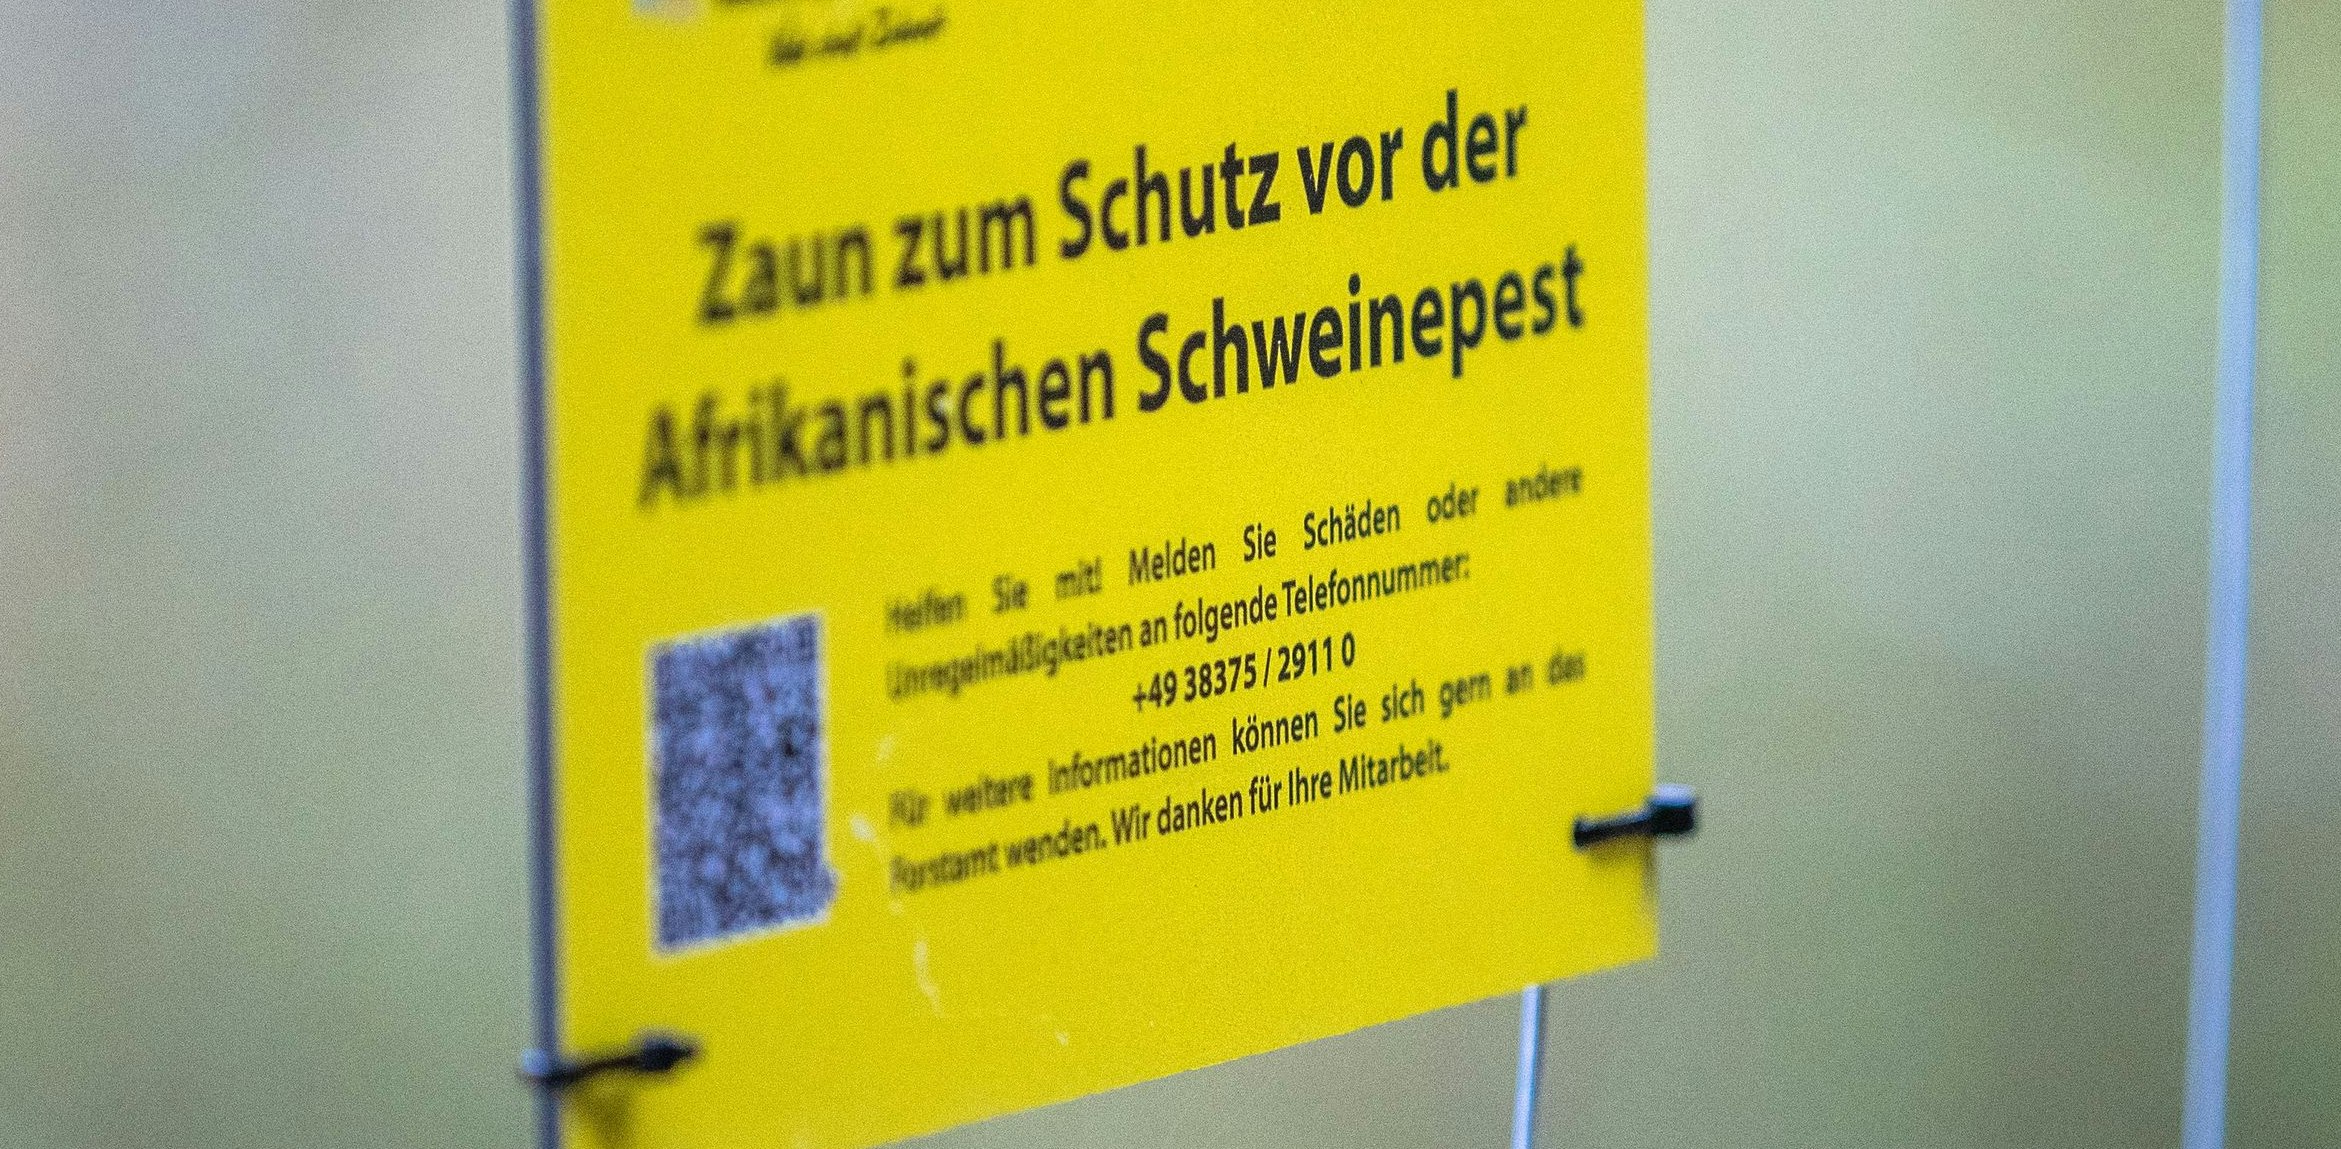 Prävention per Draht und elektrischer Ladung: Ein Sperrzaun an der Grenze zwischen Polen und Deutschland soll die Ausbreitung der Afrikanischen Schweinepest verhindern. Foto: dpa / Büttner